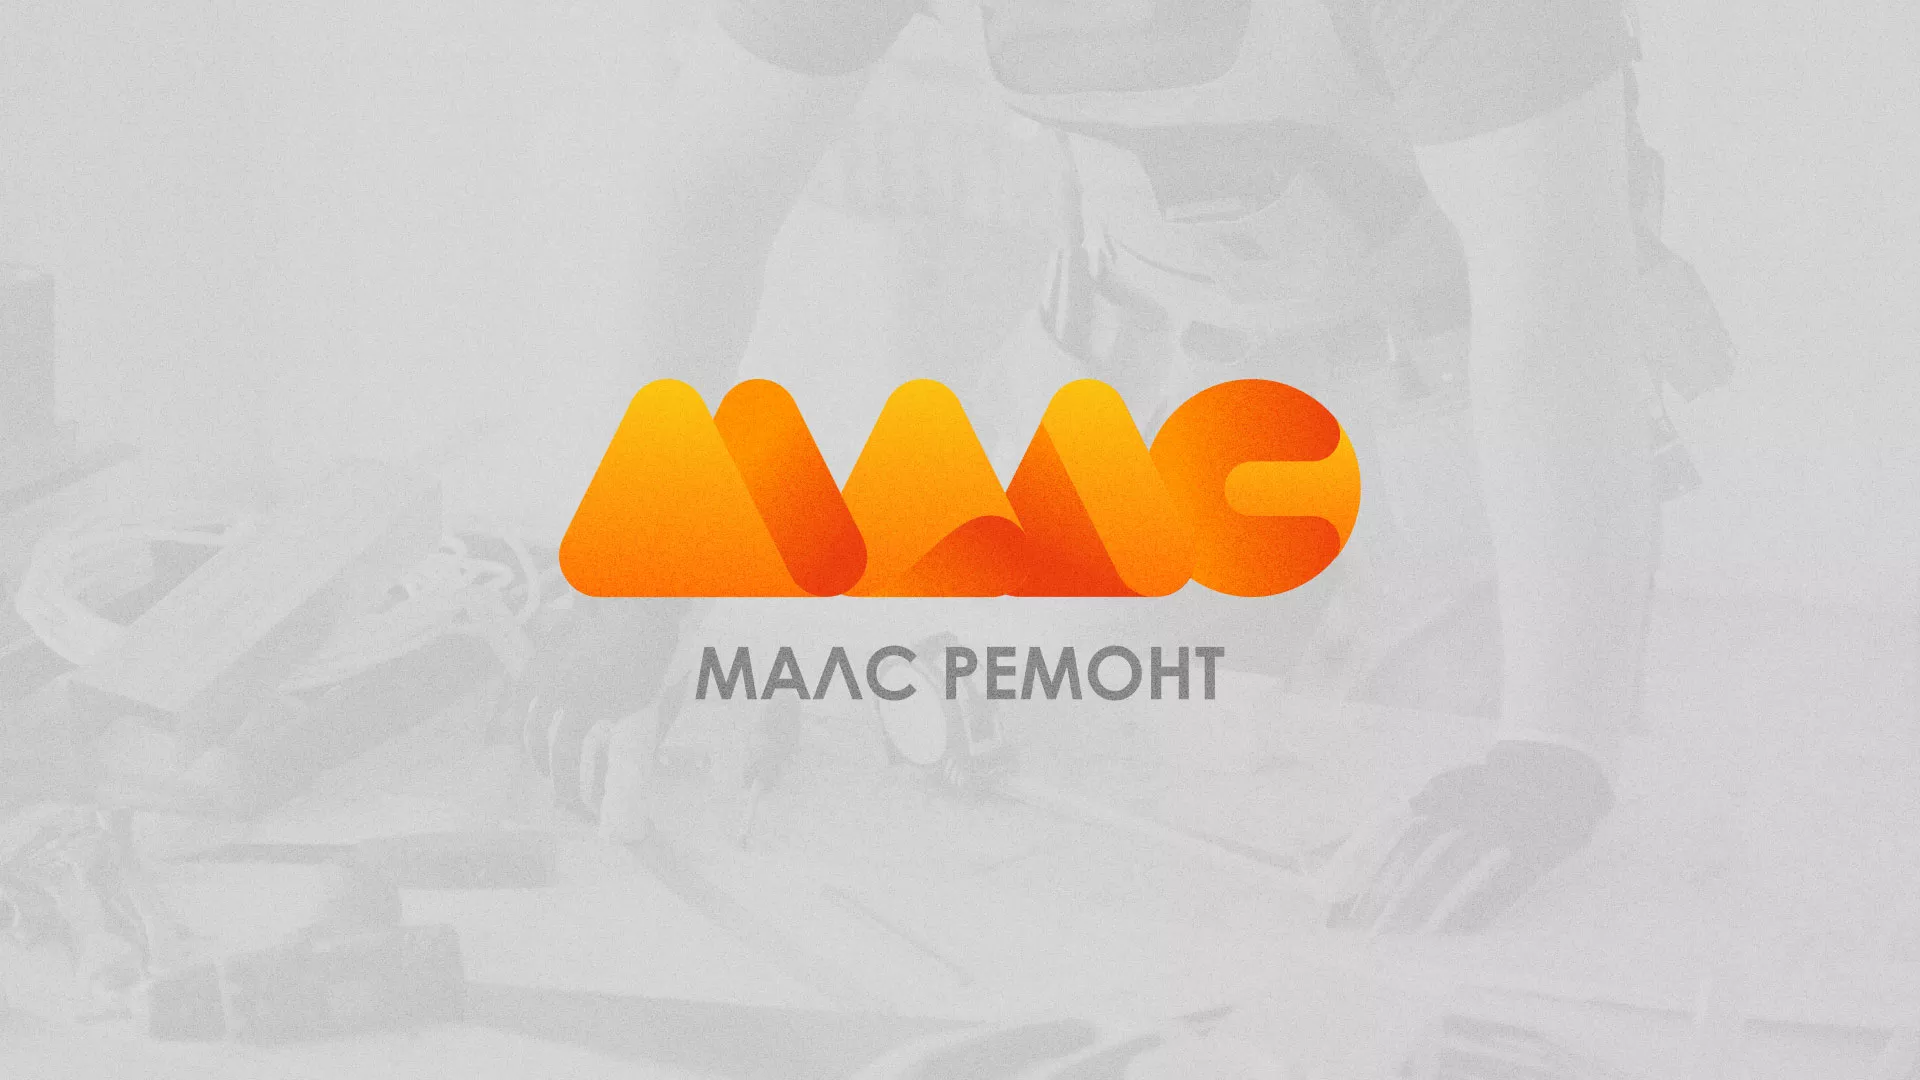 Создание логотипа для компании «МАЛС РЕМОНТ» в Андреаполе